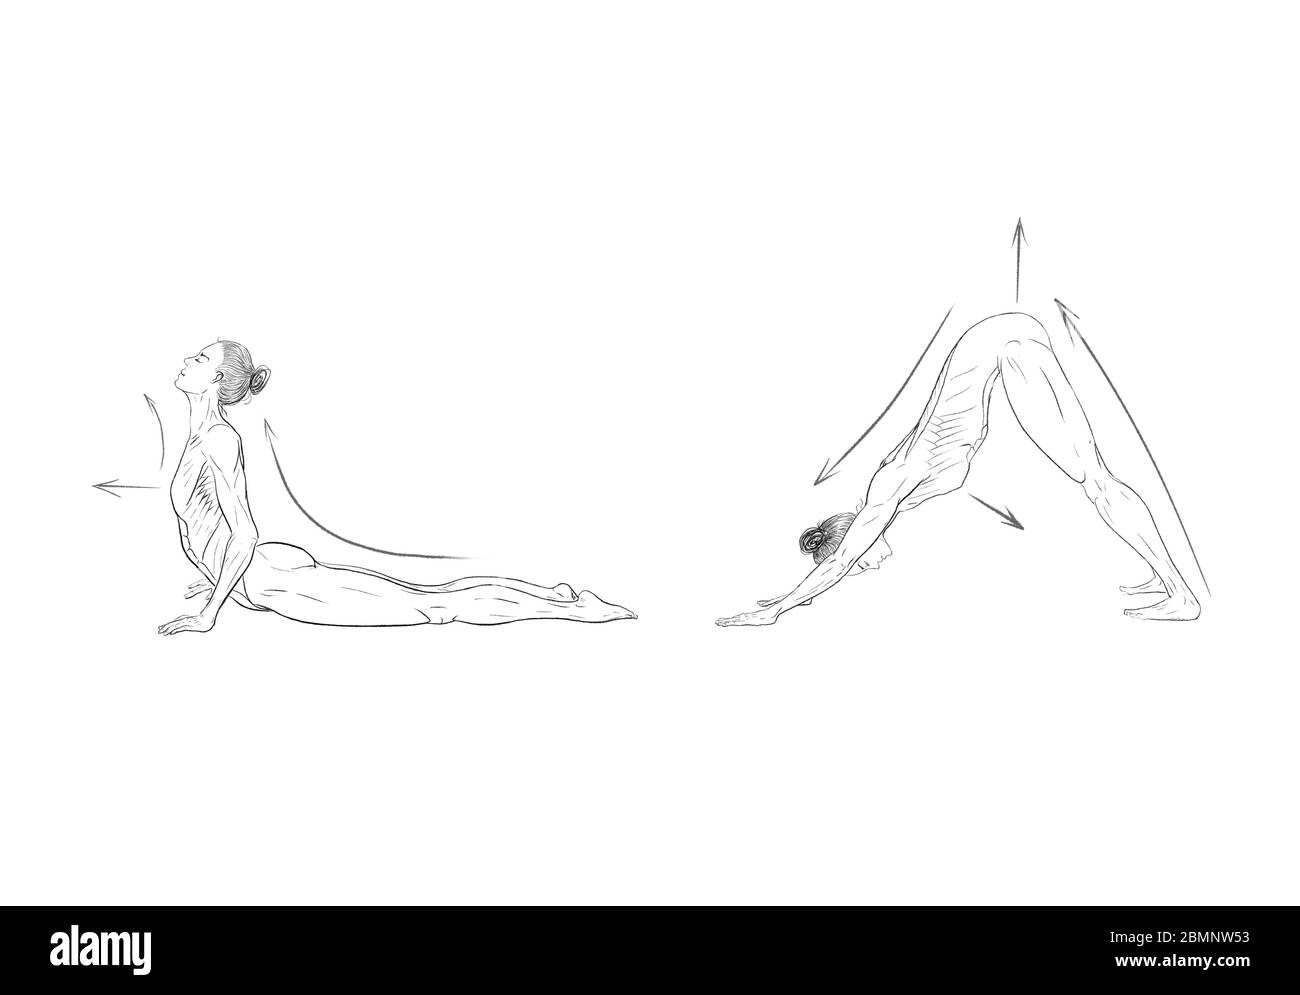 Illustration des poses de yoga (asanas) Banque D'Images